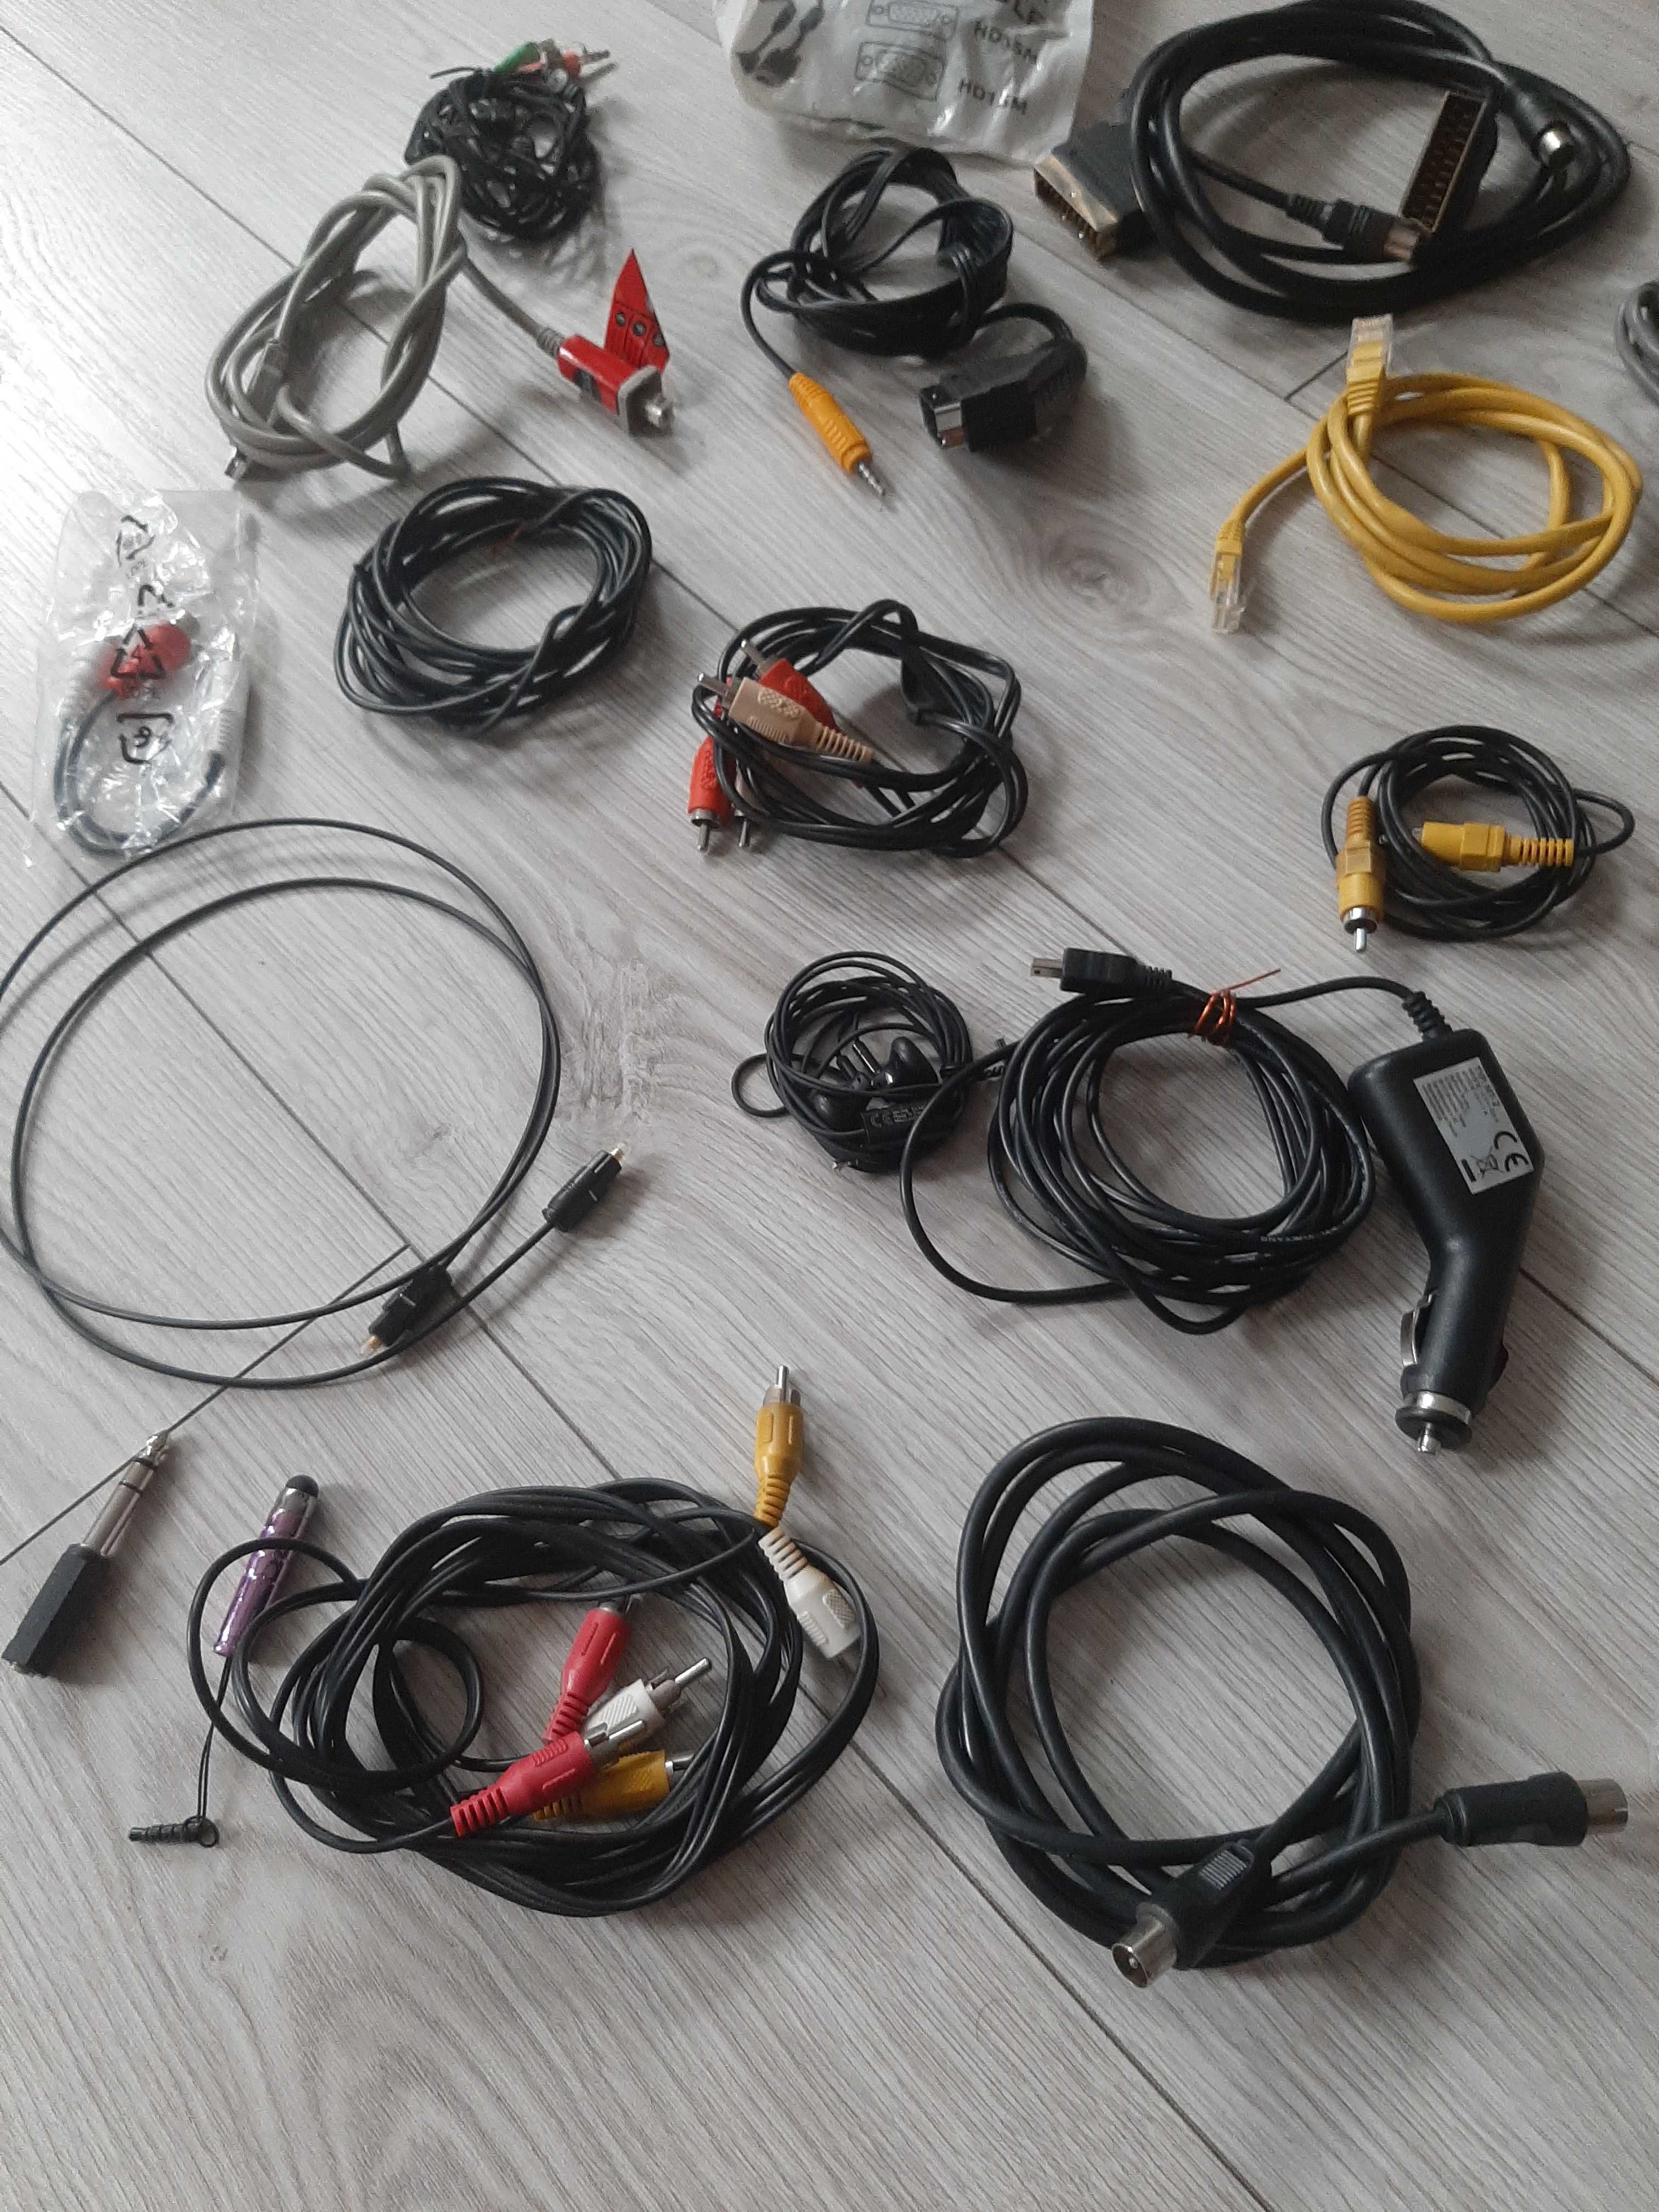 Kable komputerowe VGA, Rca, Scart, Rj45, optyczny